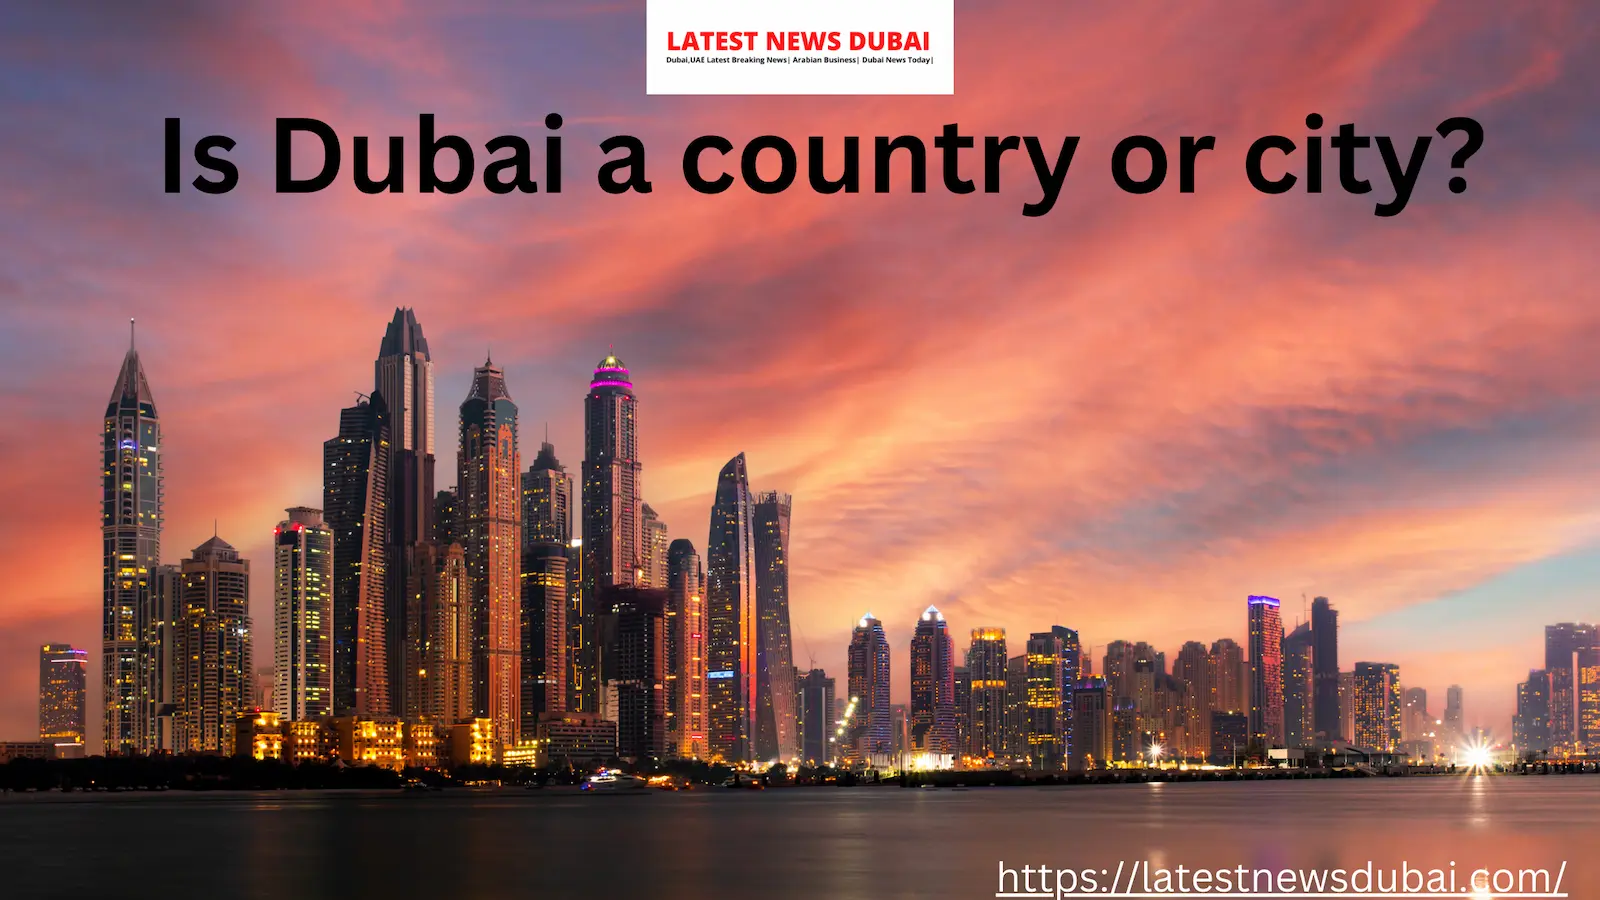 Dubai a country or city